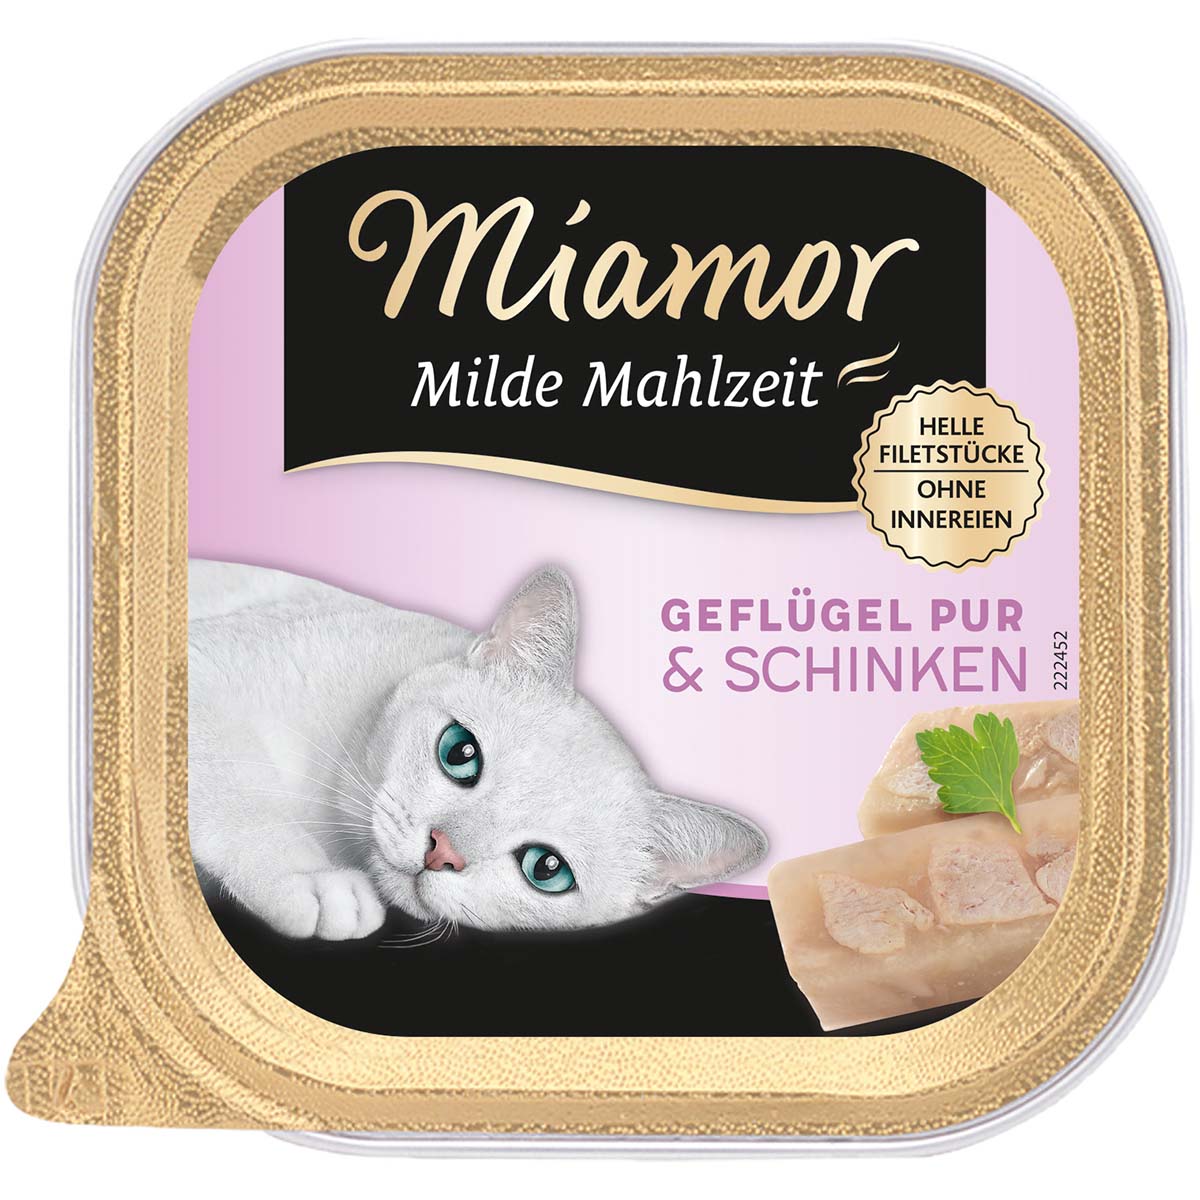 Miamor Milde Mahlzeit Geflügel Pur & Schinken 32x100g von Miamor